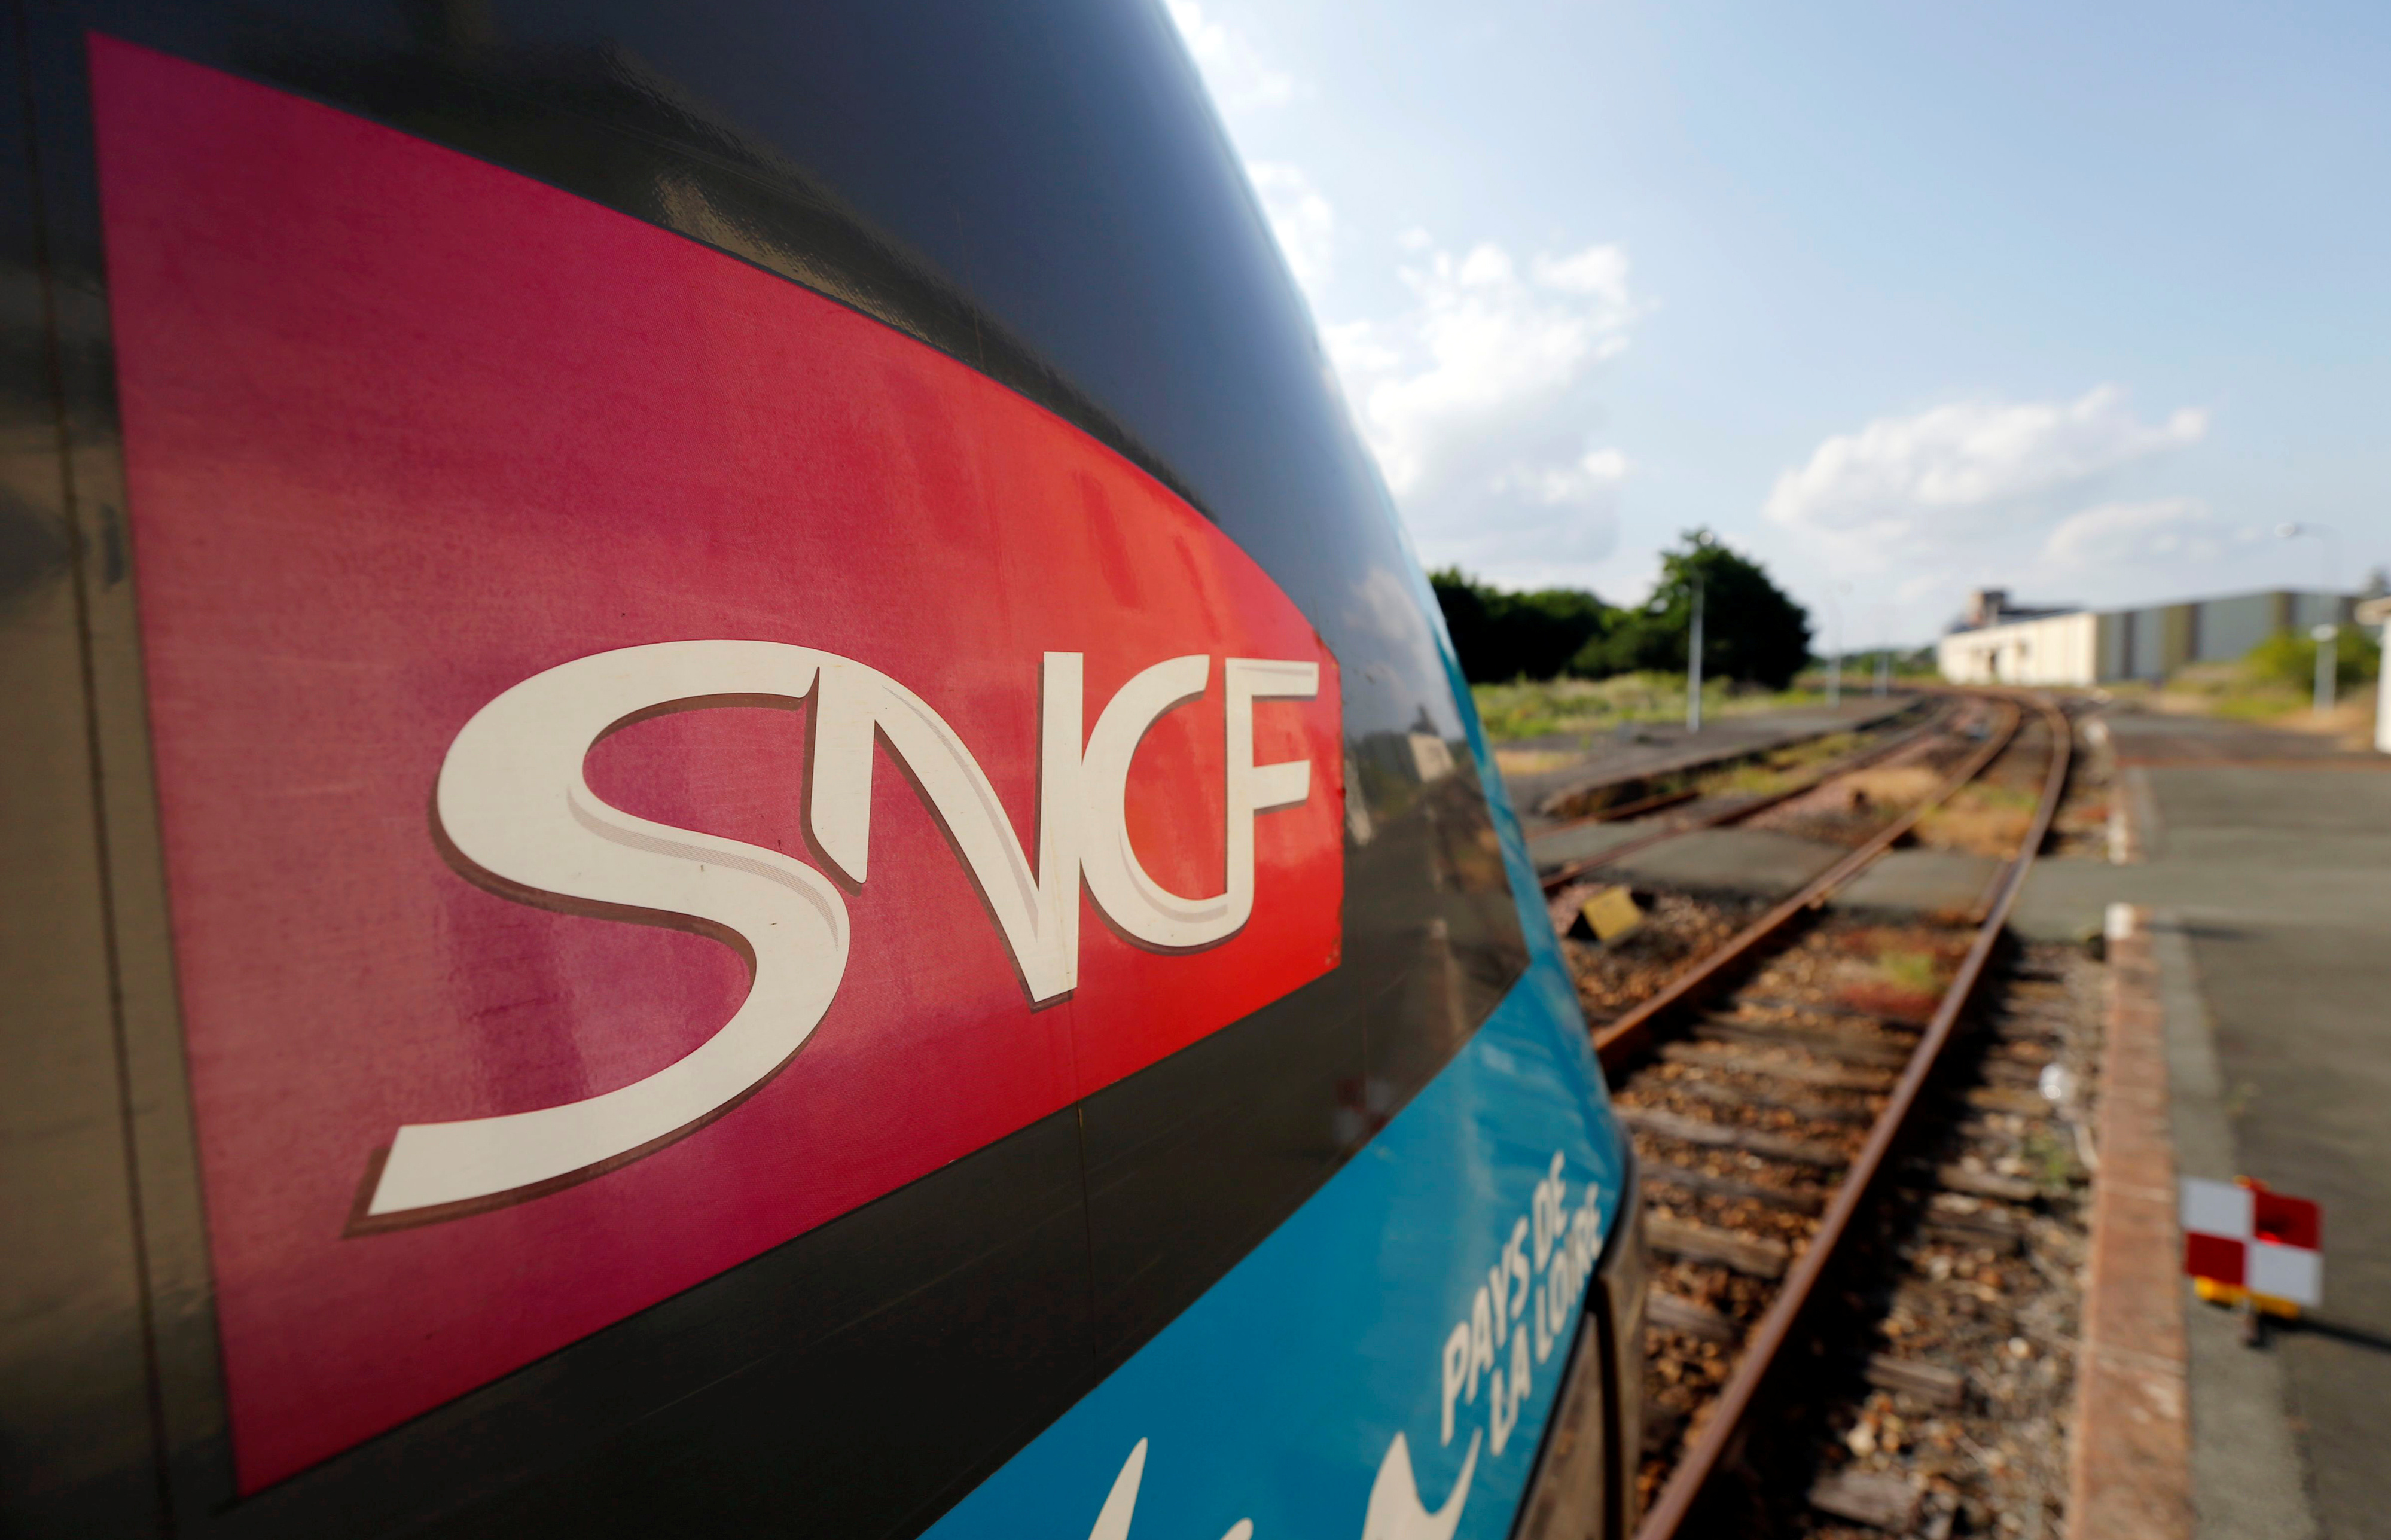 La SNCF va bénéficier d'une recapitalisation de 4,05 milliards d'euros